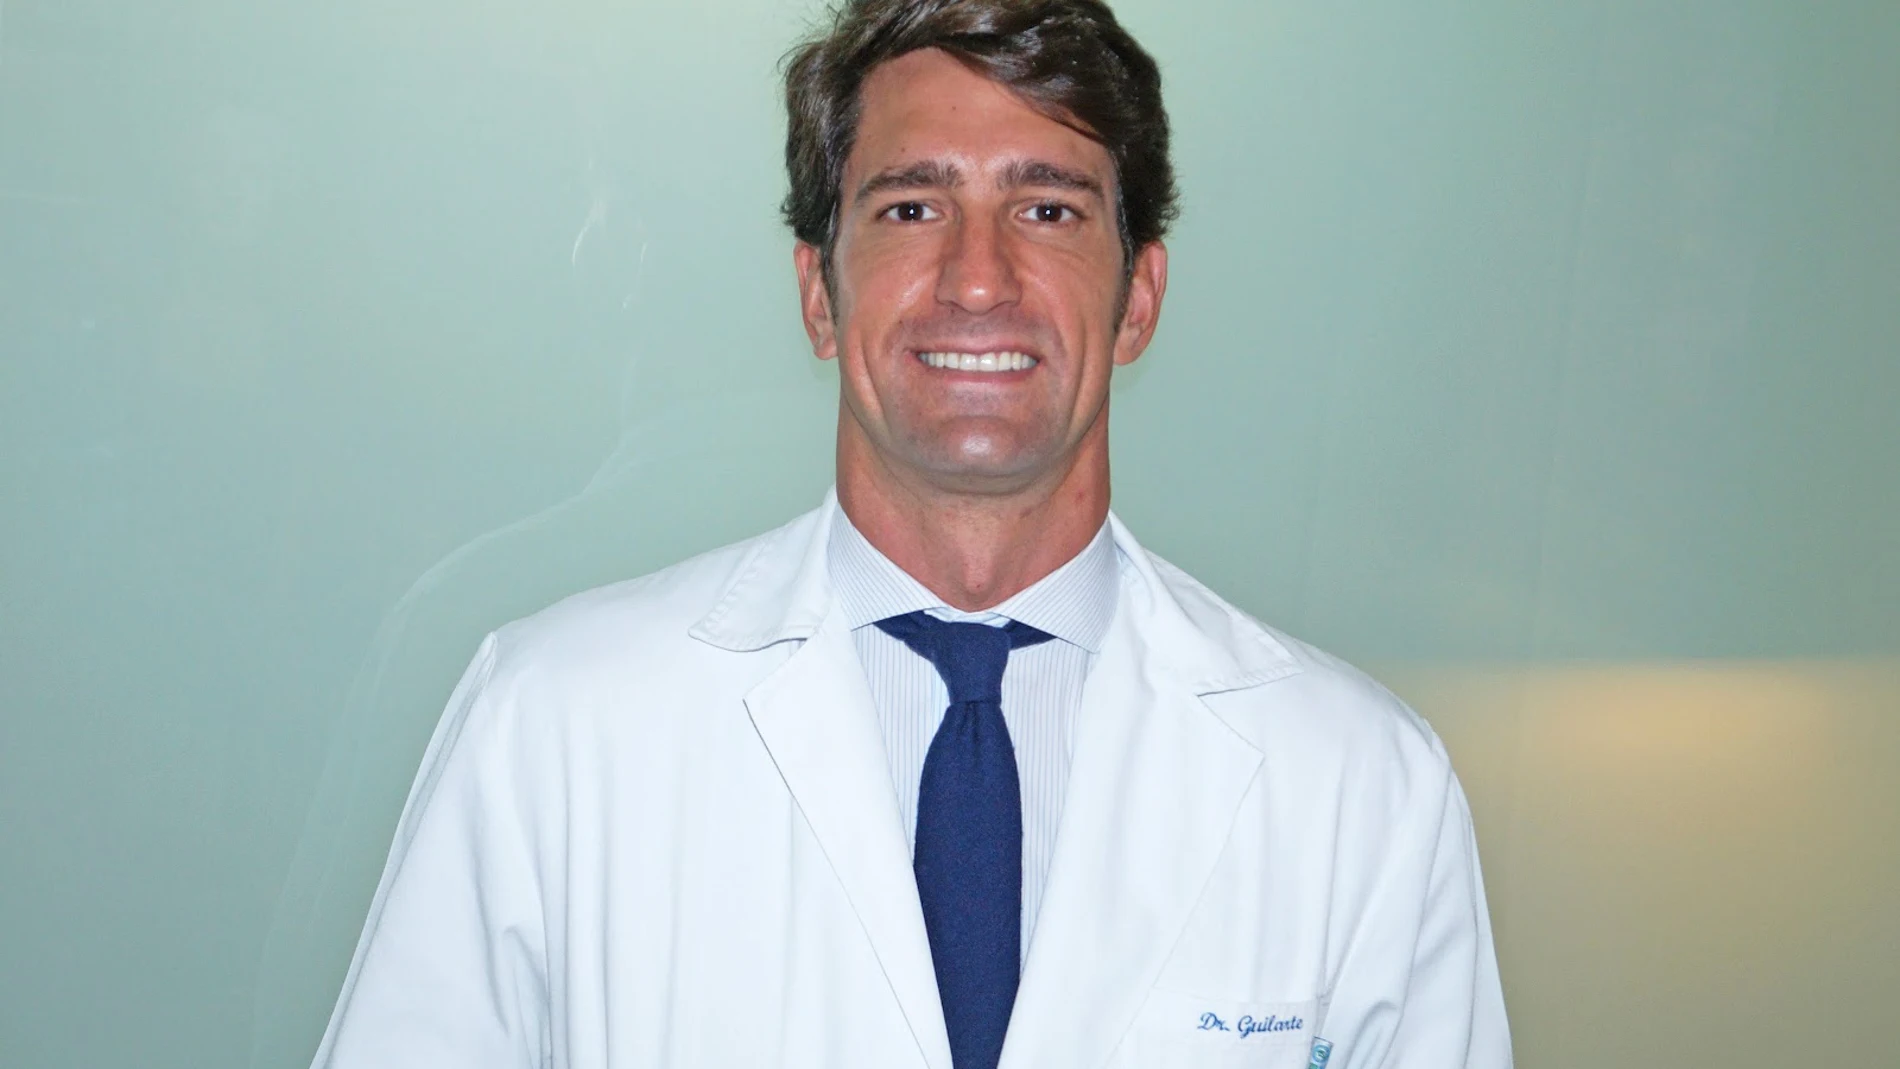 El Dr. Guilarte, el cirujano de referencia en aumento de pecho en Madrid